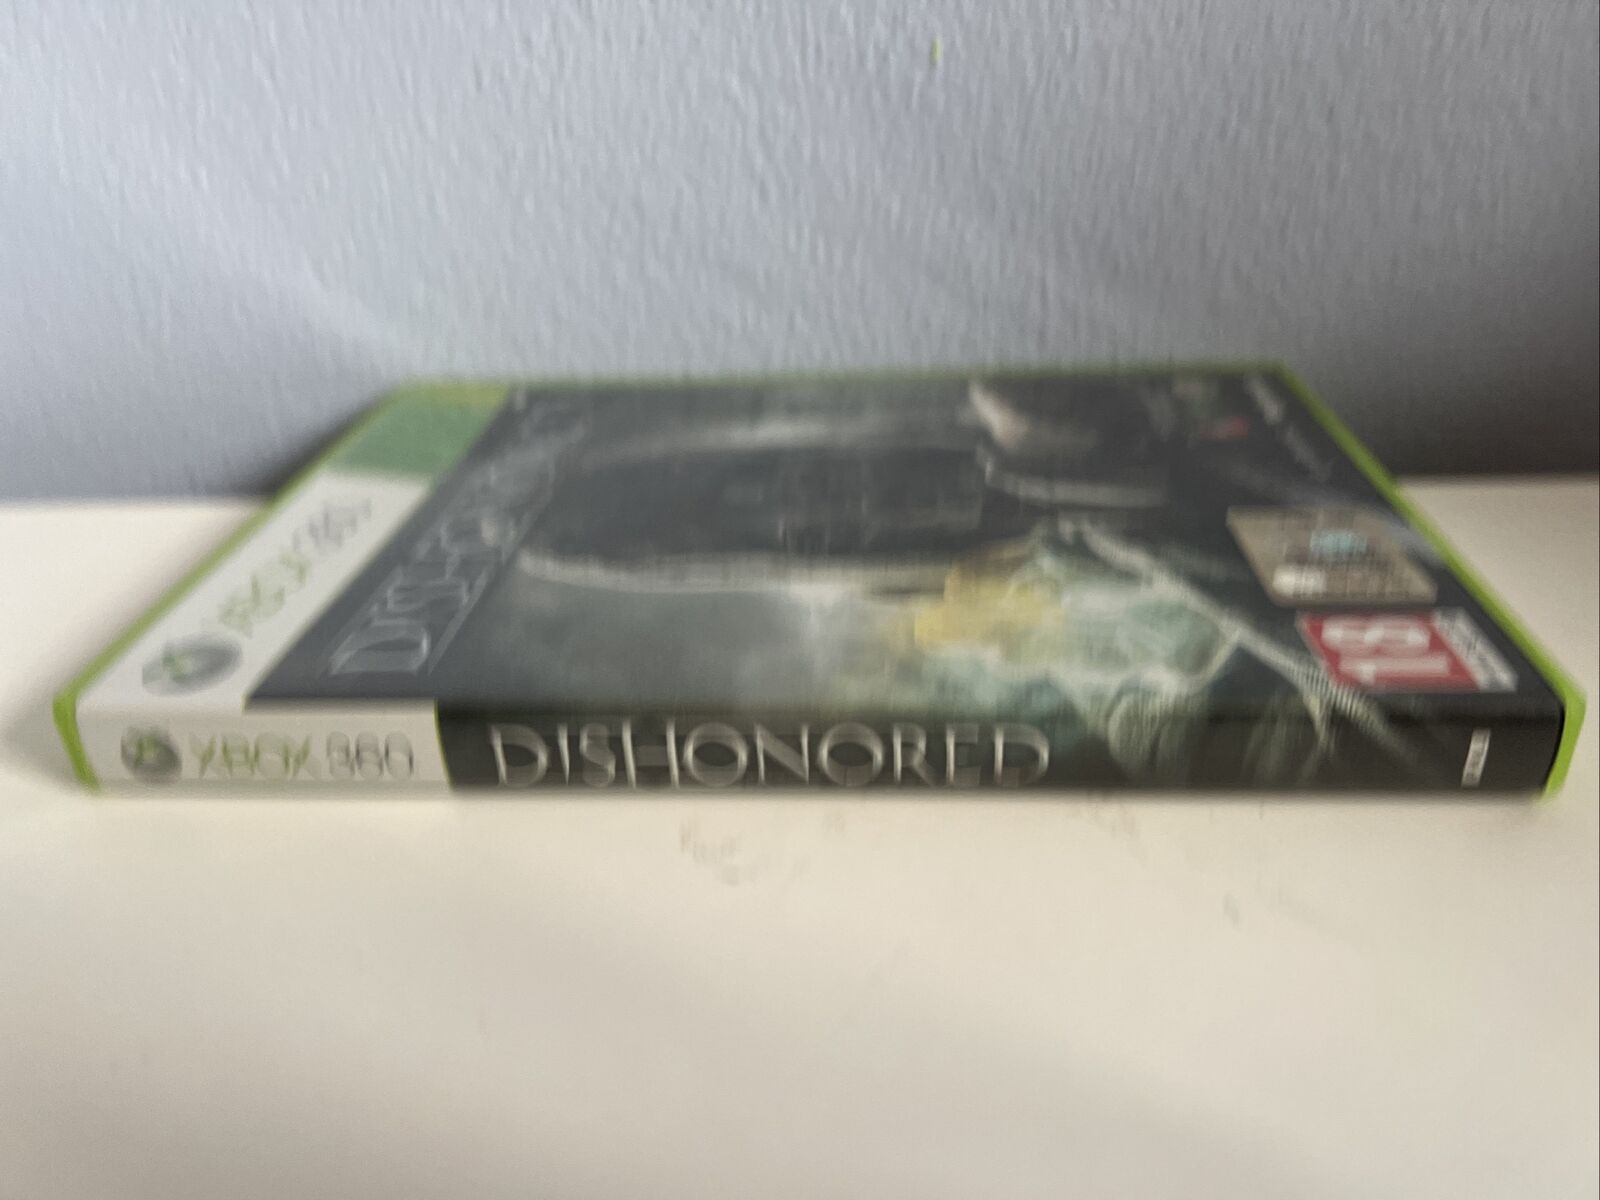 Microsoft-Xbox-360-Videogioco-Dishonored-Pal-Ita-133932470623-2